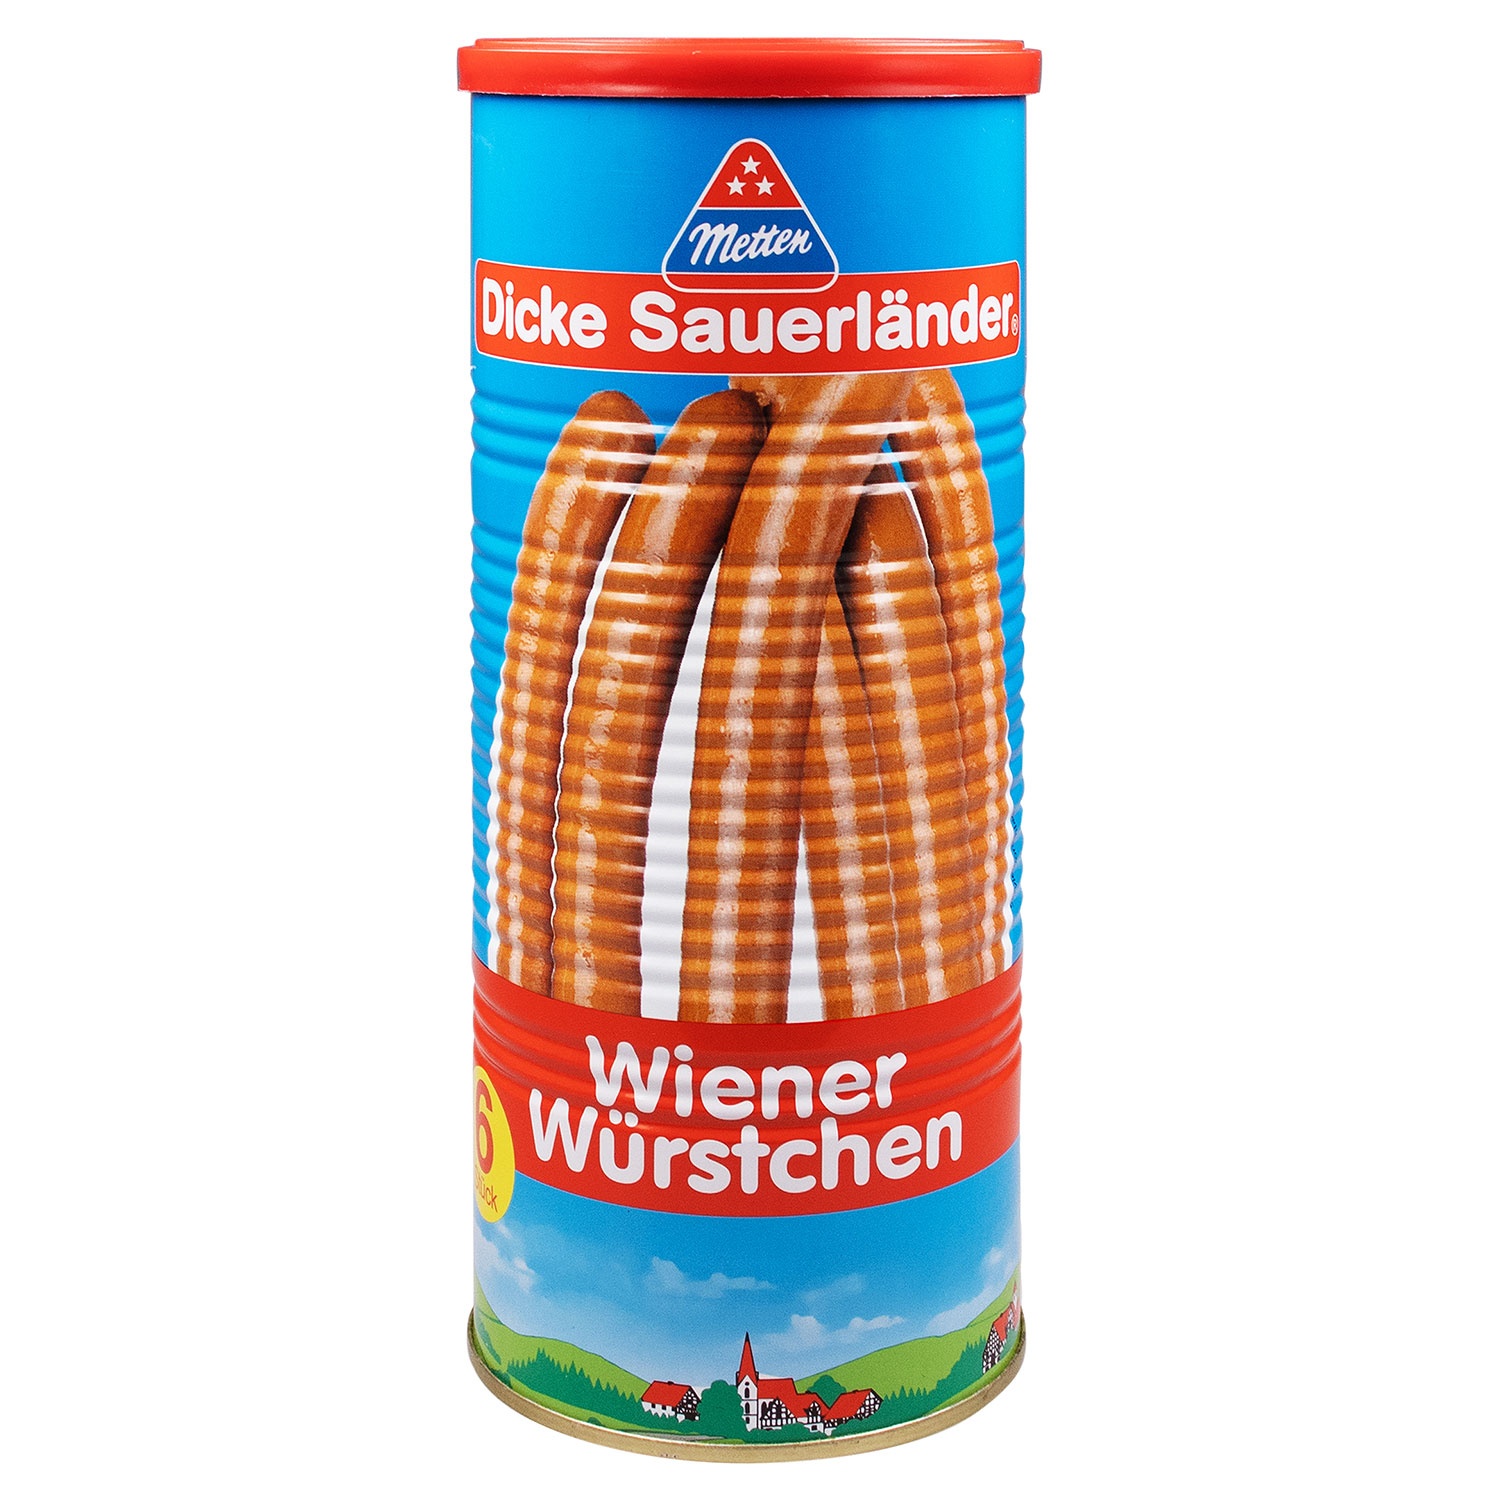 METTEN Dicke Sauerländer, Wiener Würstchen 690 g